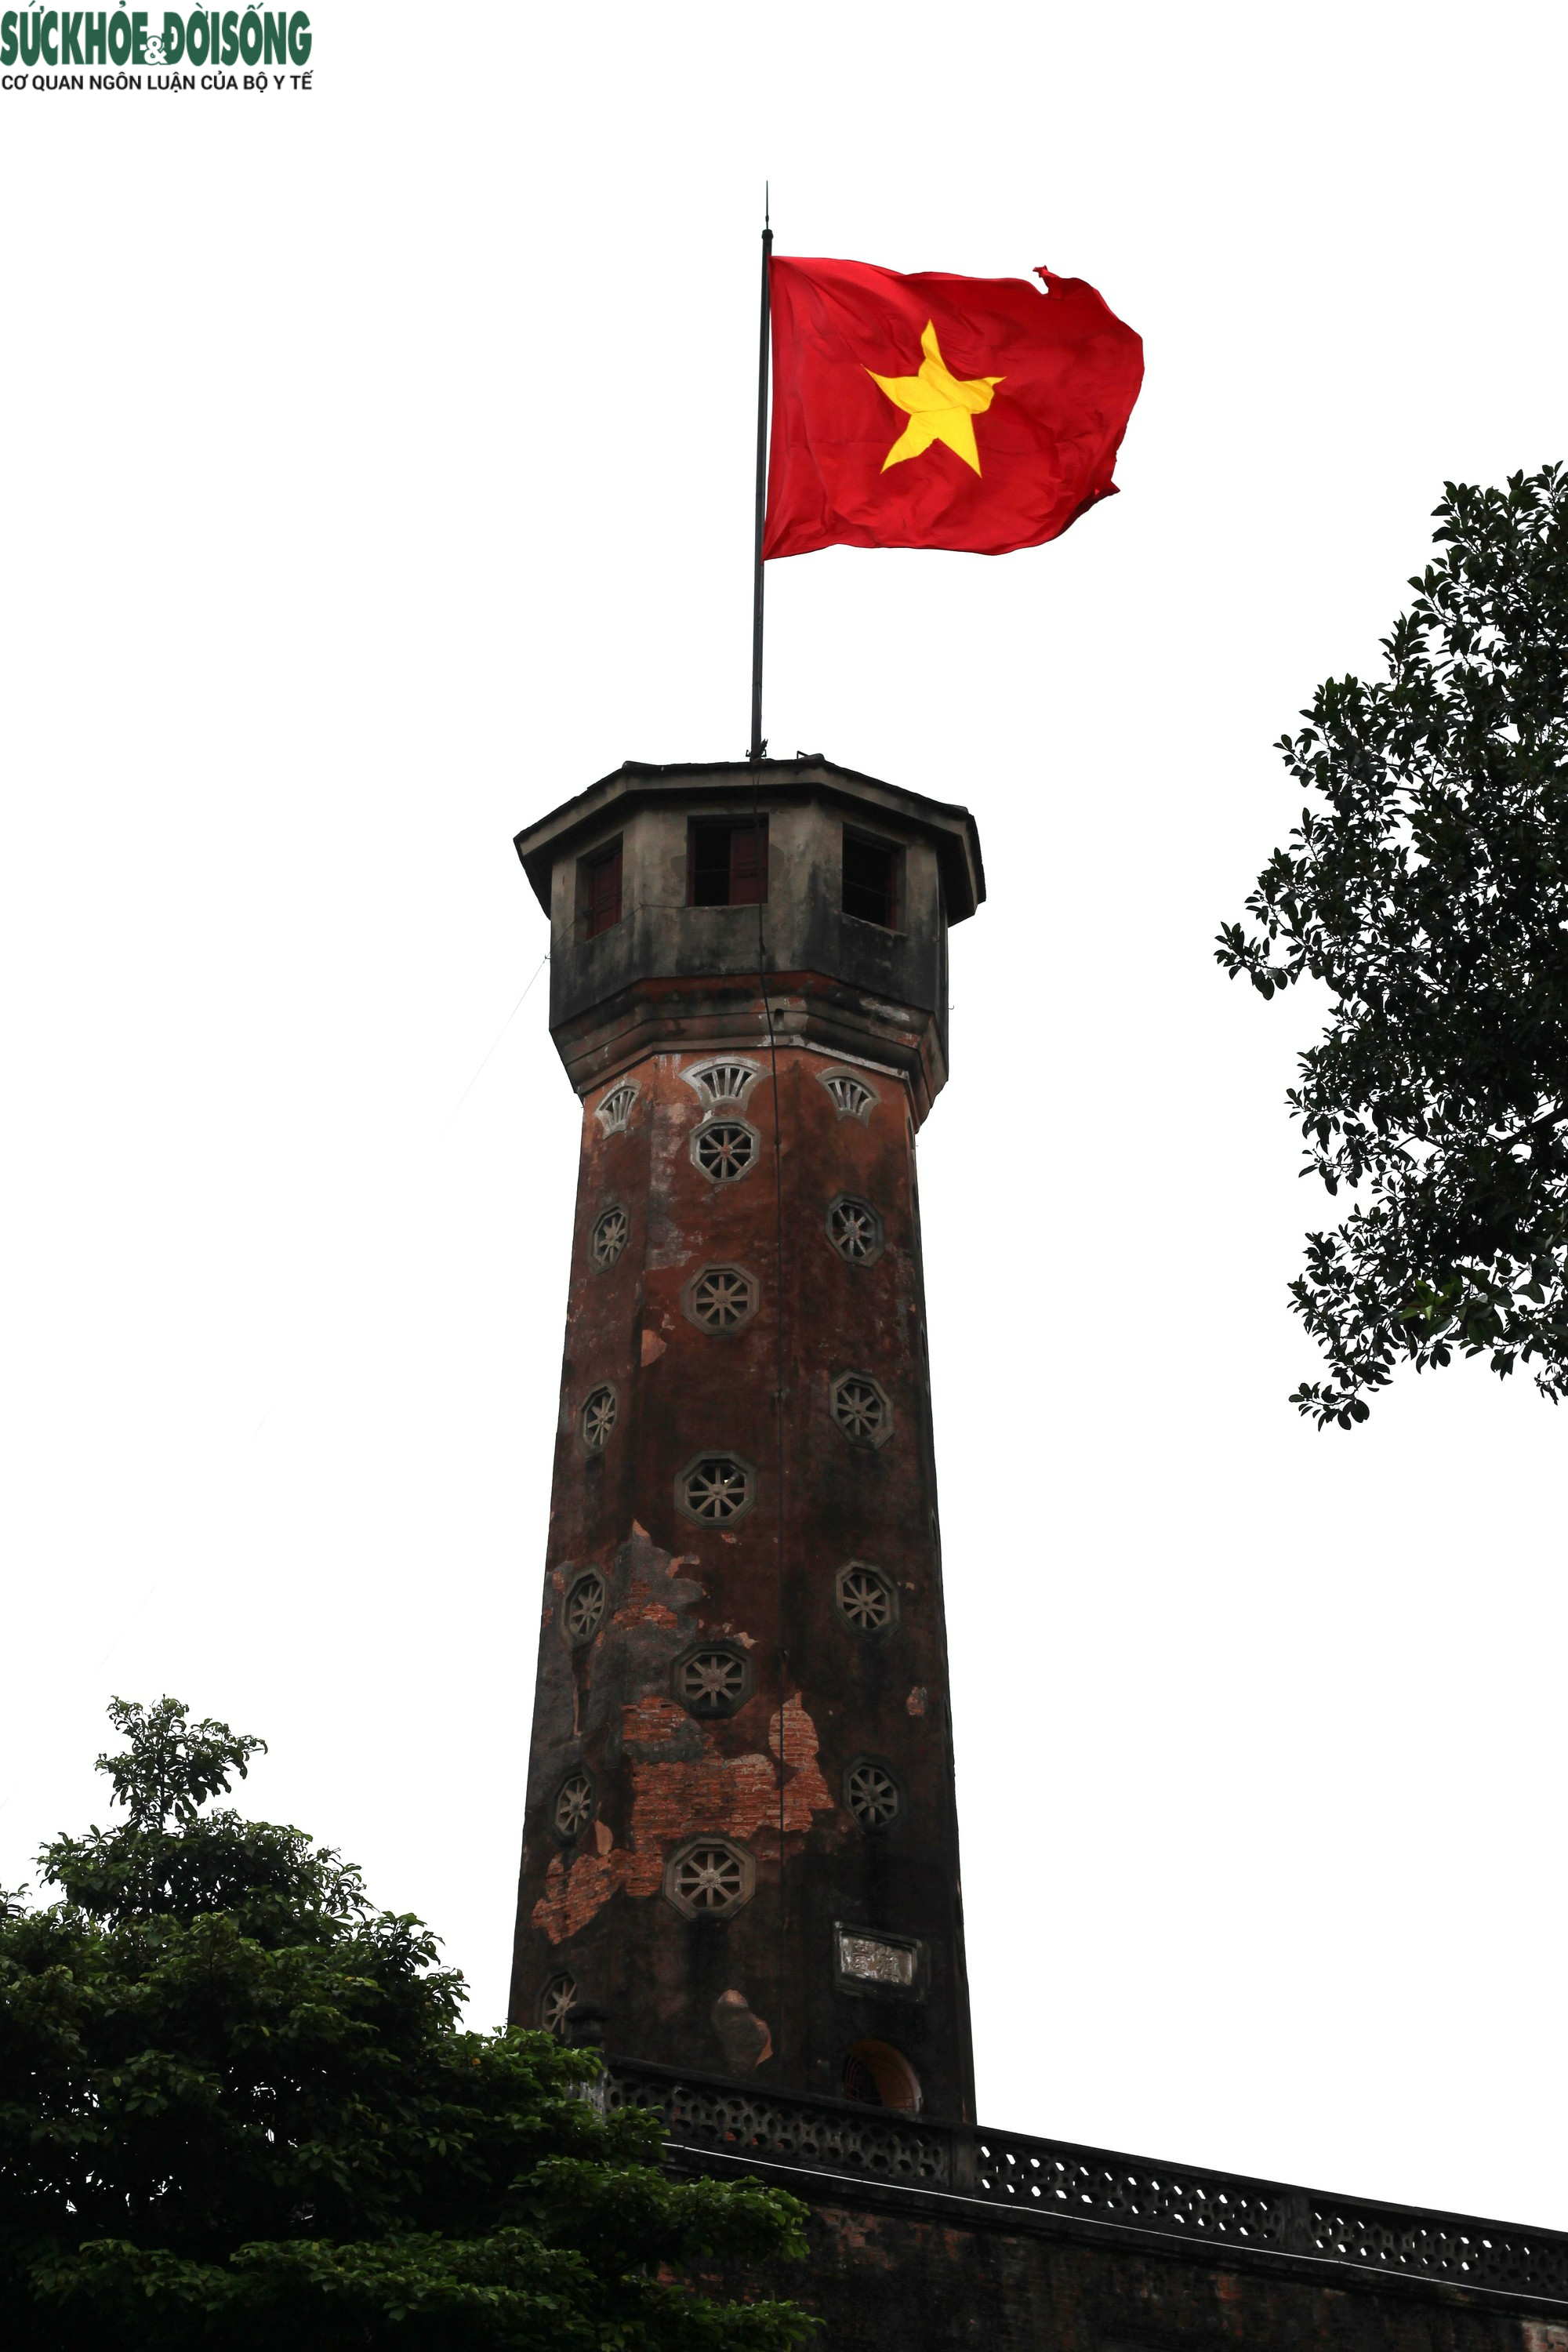 Giải phóng Thủ đô 10/10: Ngày 10/10/1954, thành phố Hà Nội đã được giải phóng khỏi chế độ thực dân Pháp. Những hình ảnh diễn ra lễ kỷ niệm 69 năm giải phóng Thủ đô với các hoạt động văn hóa, nghệ thuật, thể thao và thông tin đầy màu sắc cho thấy tình hình bình yên, phát triển của đất nước hiện tại.